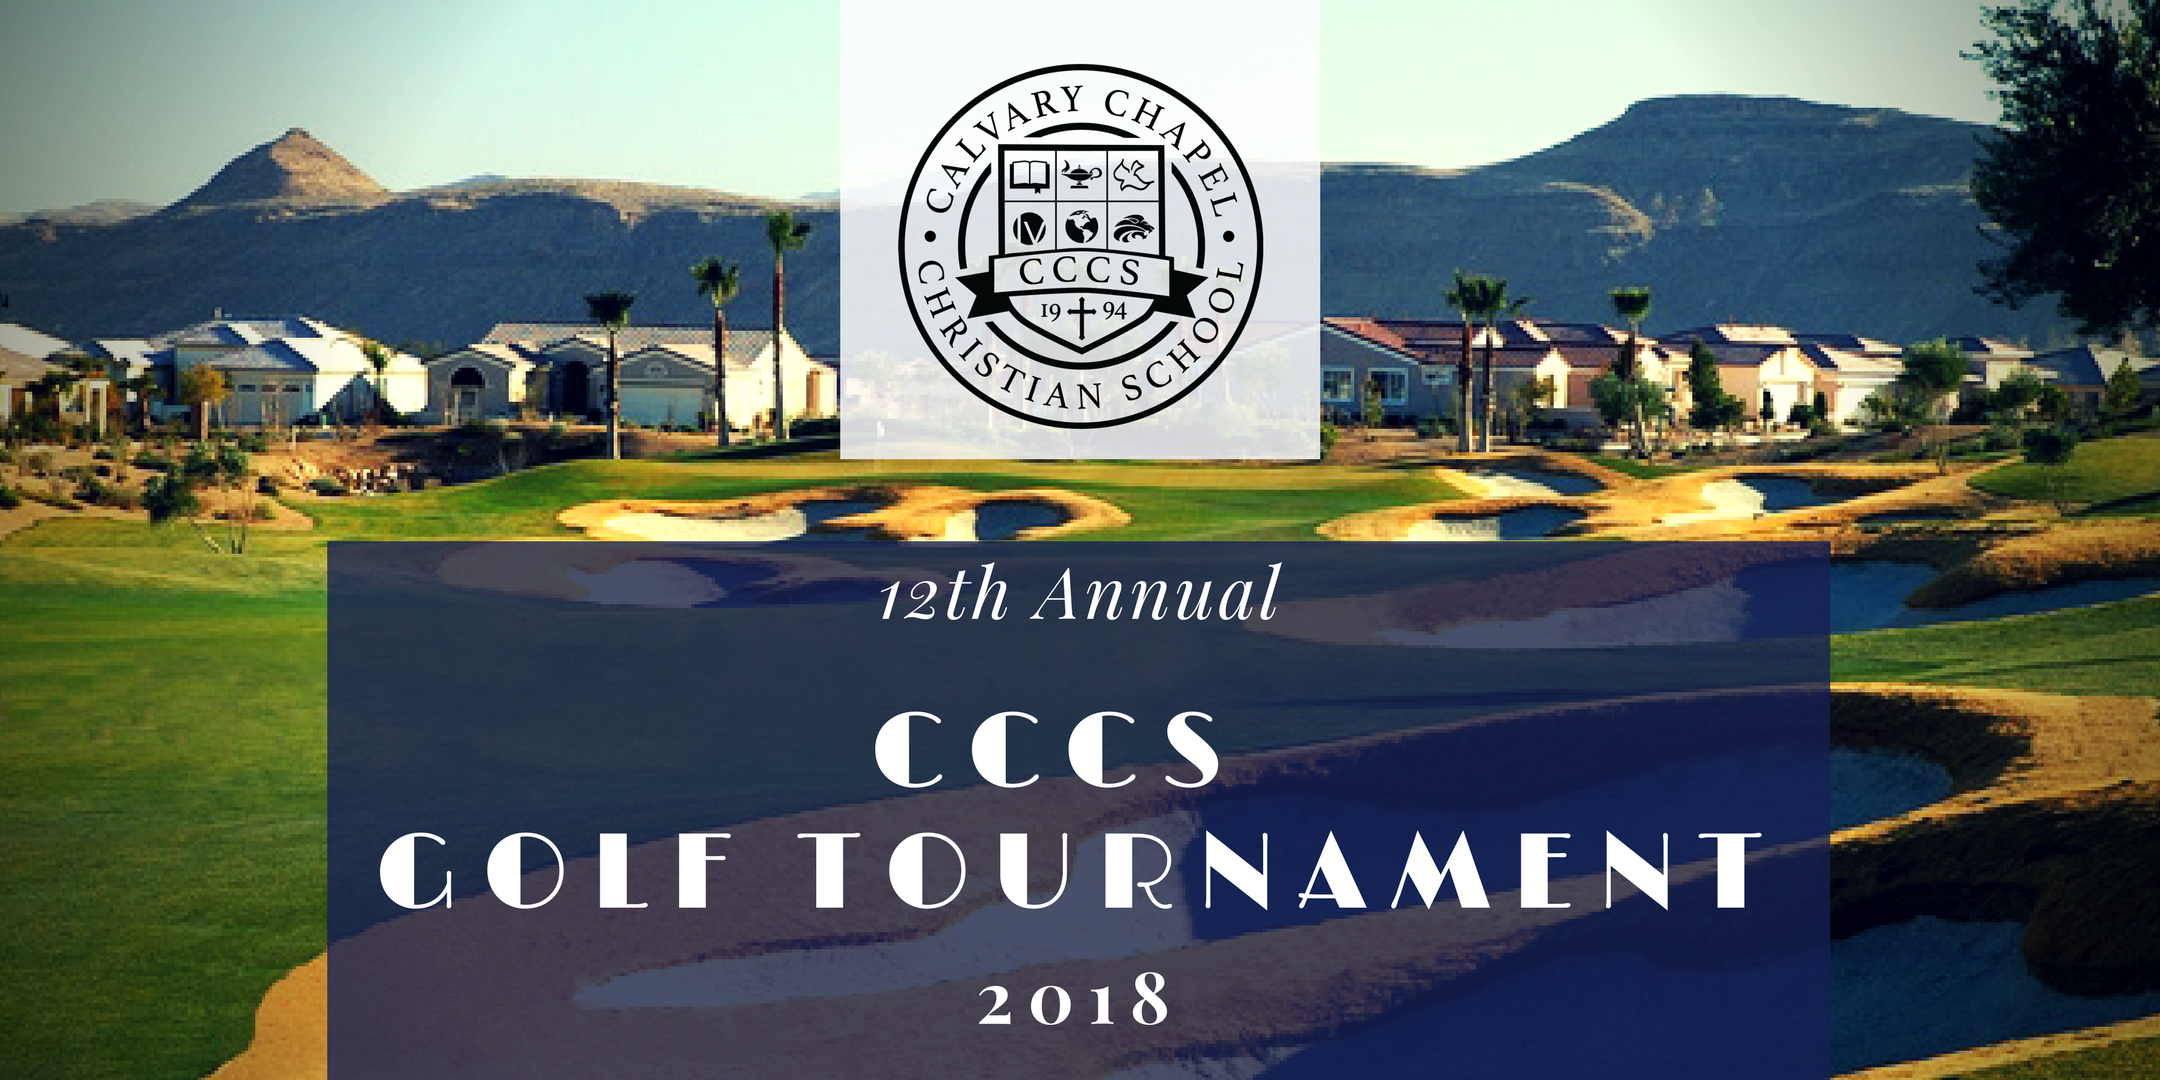 12th Annual CCCS Golf Tournament